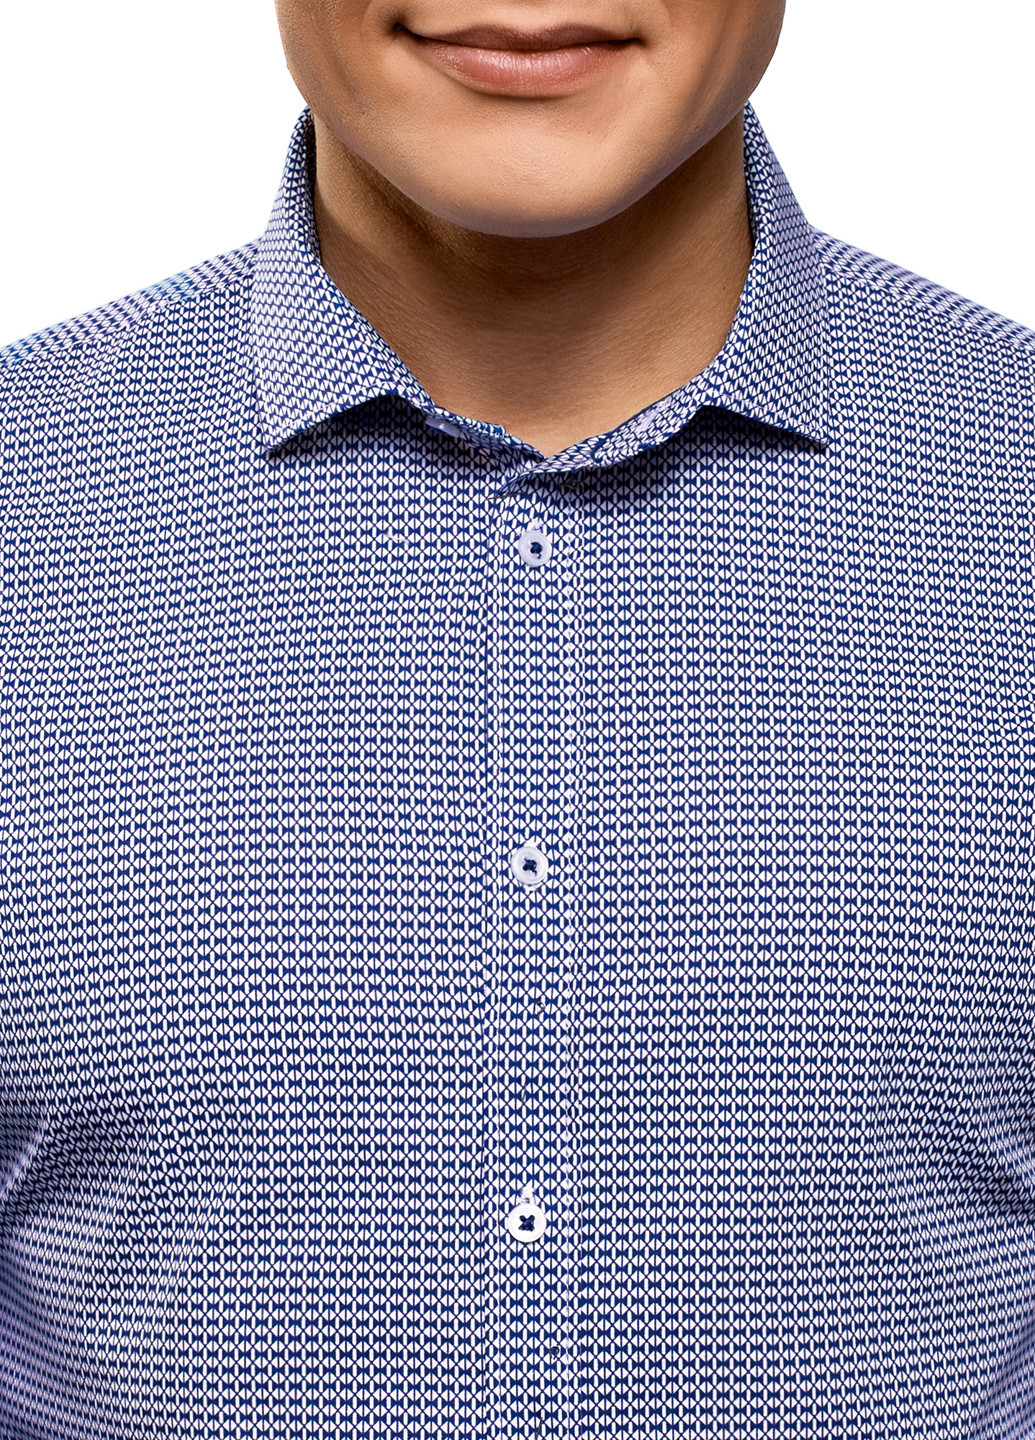 Голубой классическая рубашка с геометрическим узором Oodji с длинным рукавом